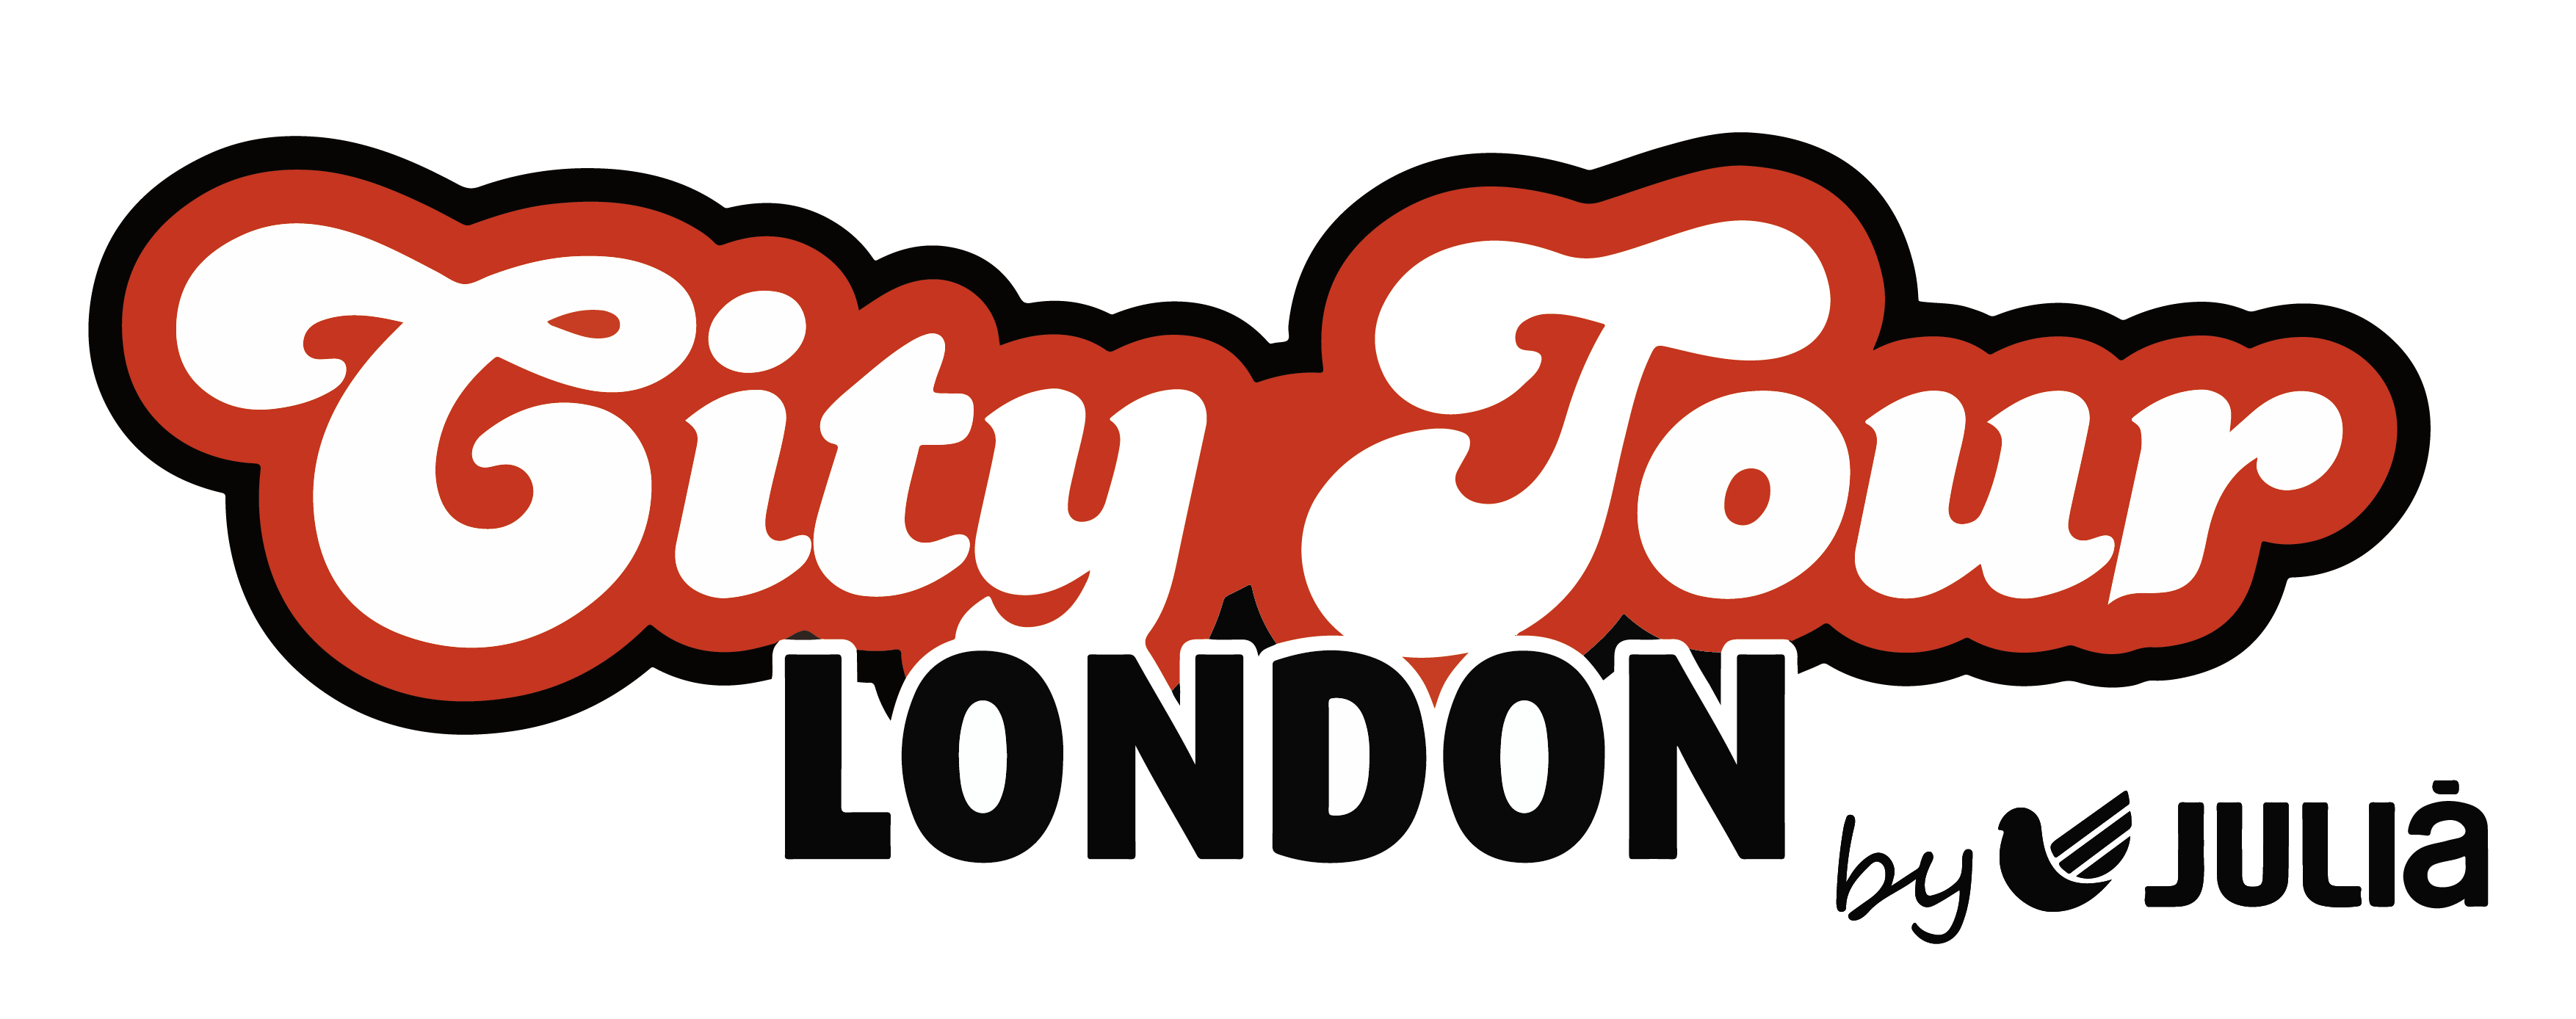 London City Tour